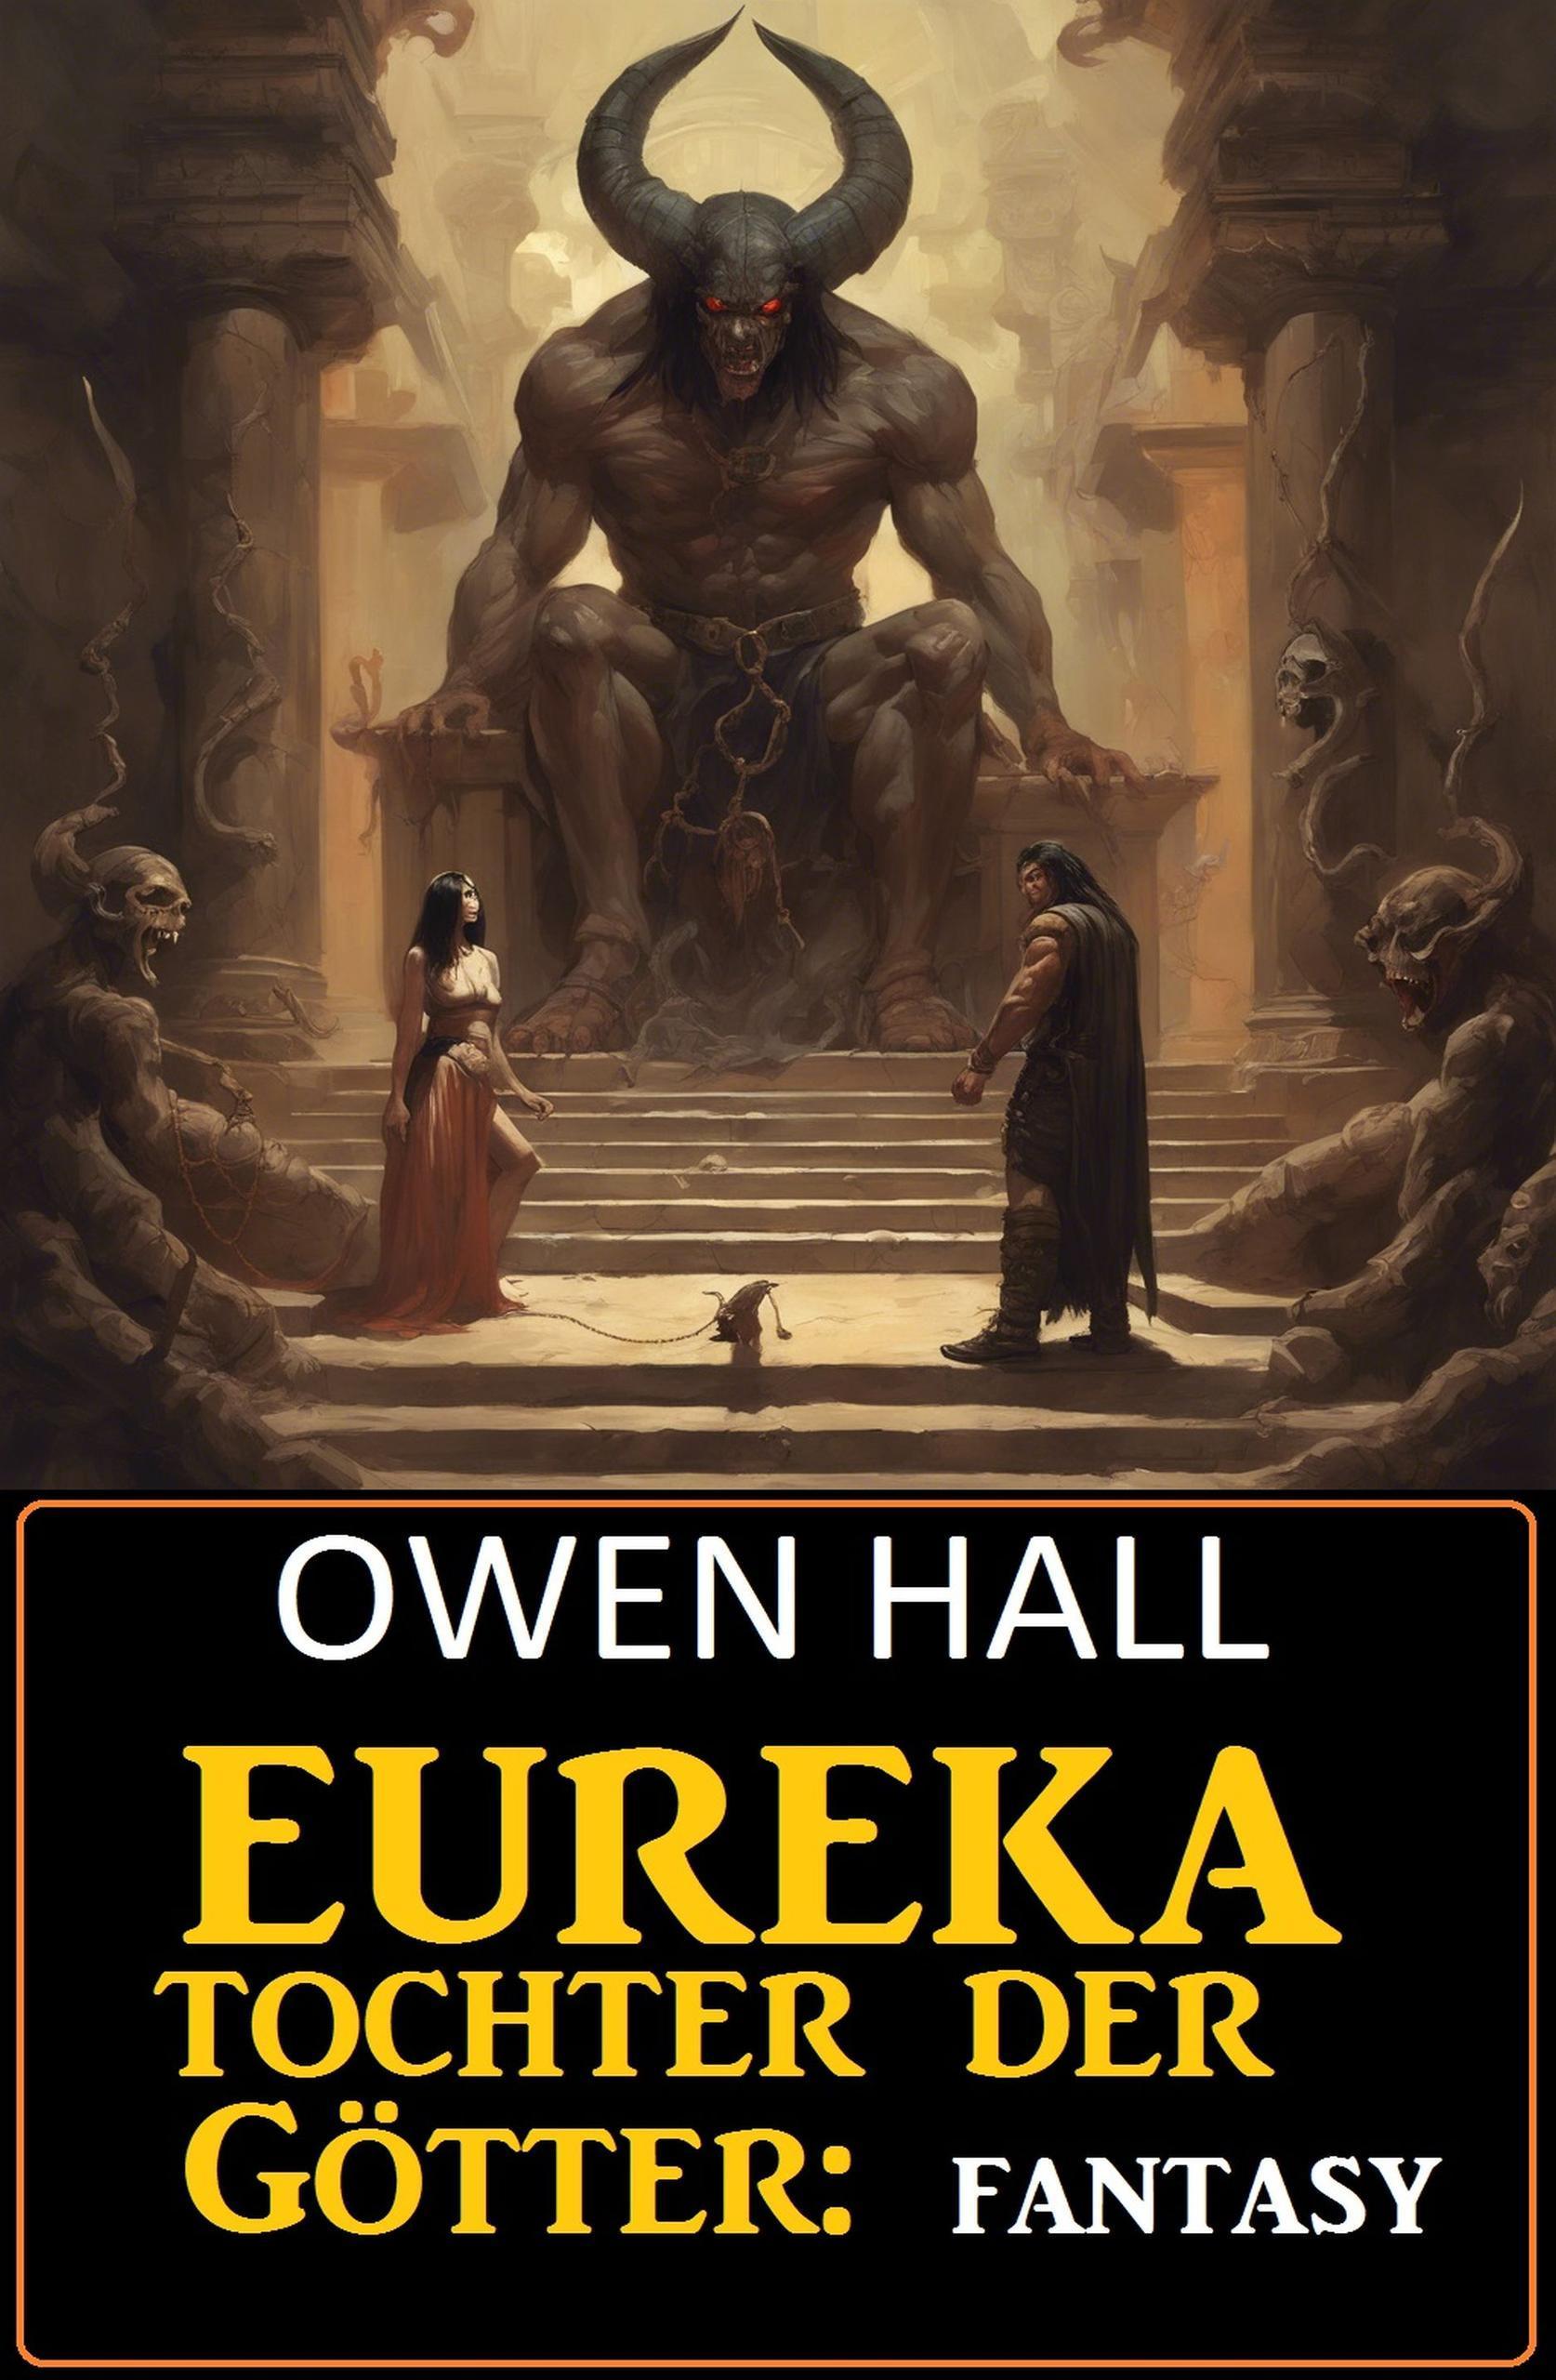 Eureka - Tochter der Götter: Fantasy